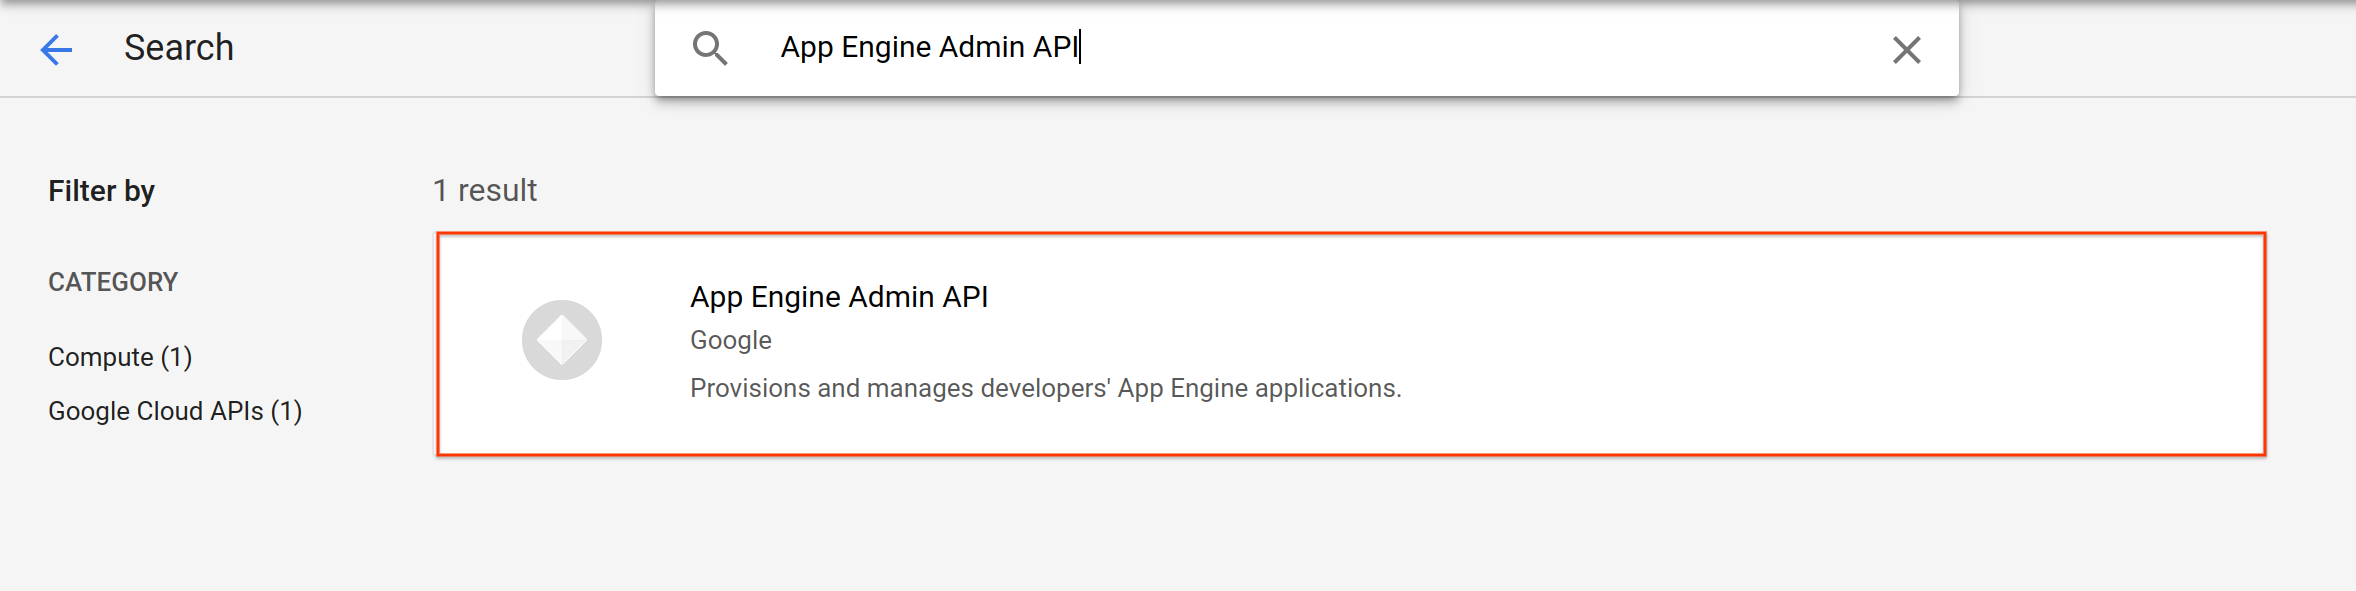 app-engine-admin-api.png